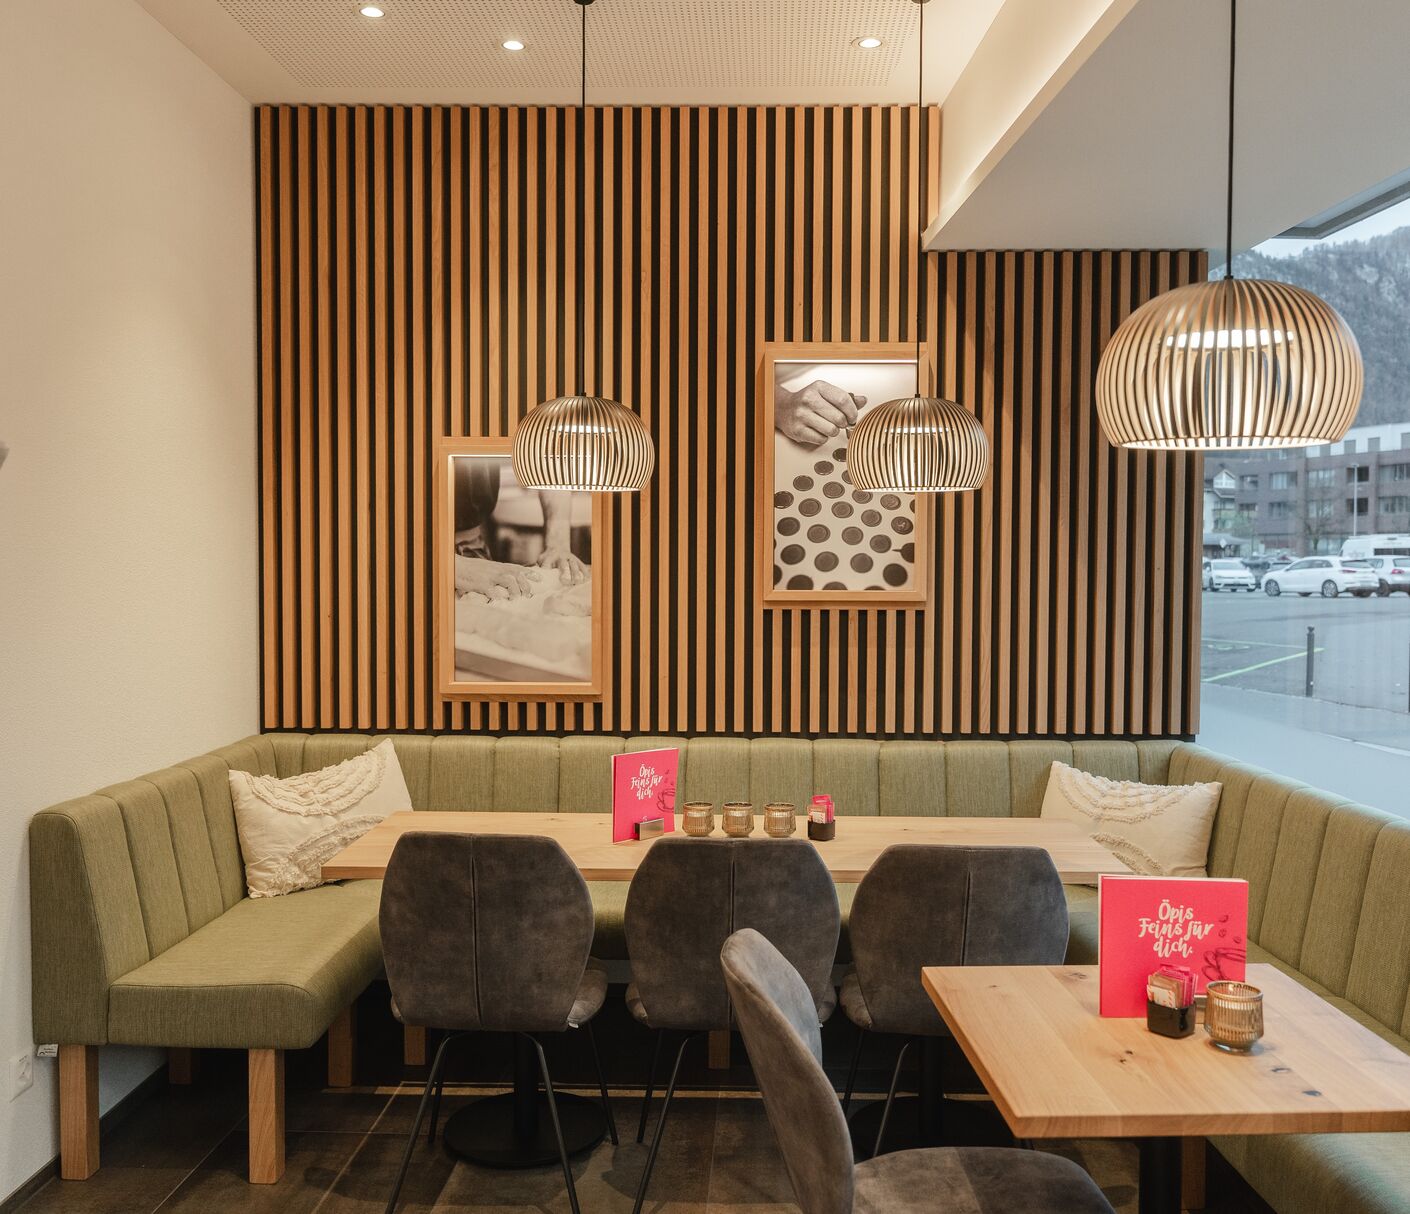 Holz und einzigartiges Design setzen Räume in Szene!
Café Conditorei Schelbert, Neues Ladenlokal in Brunnen
